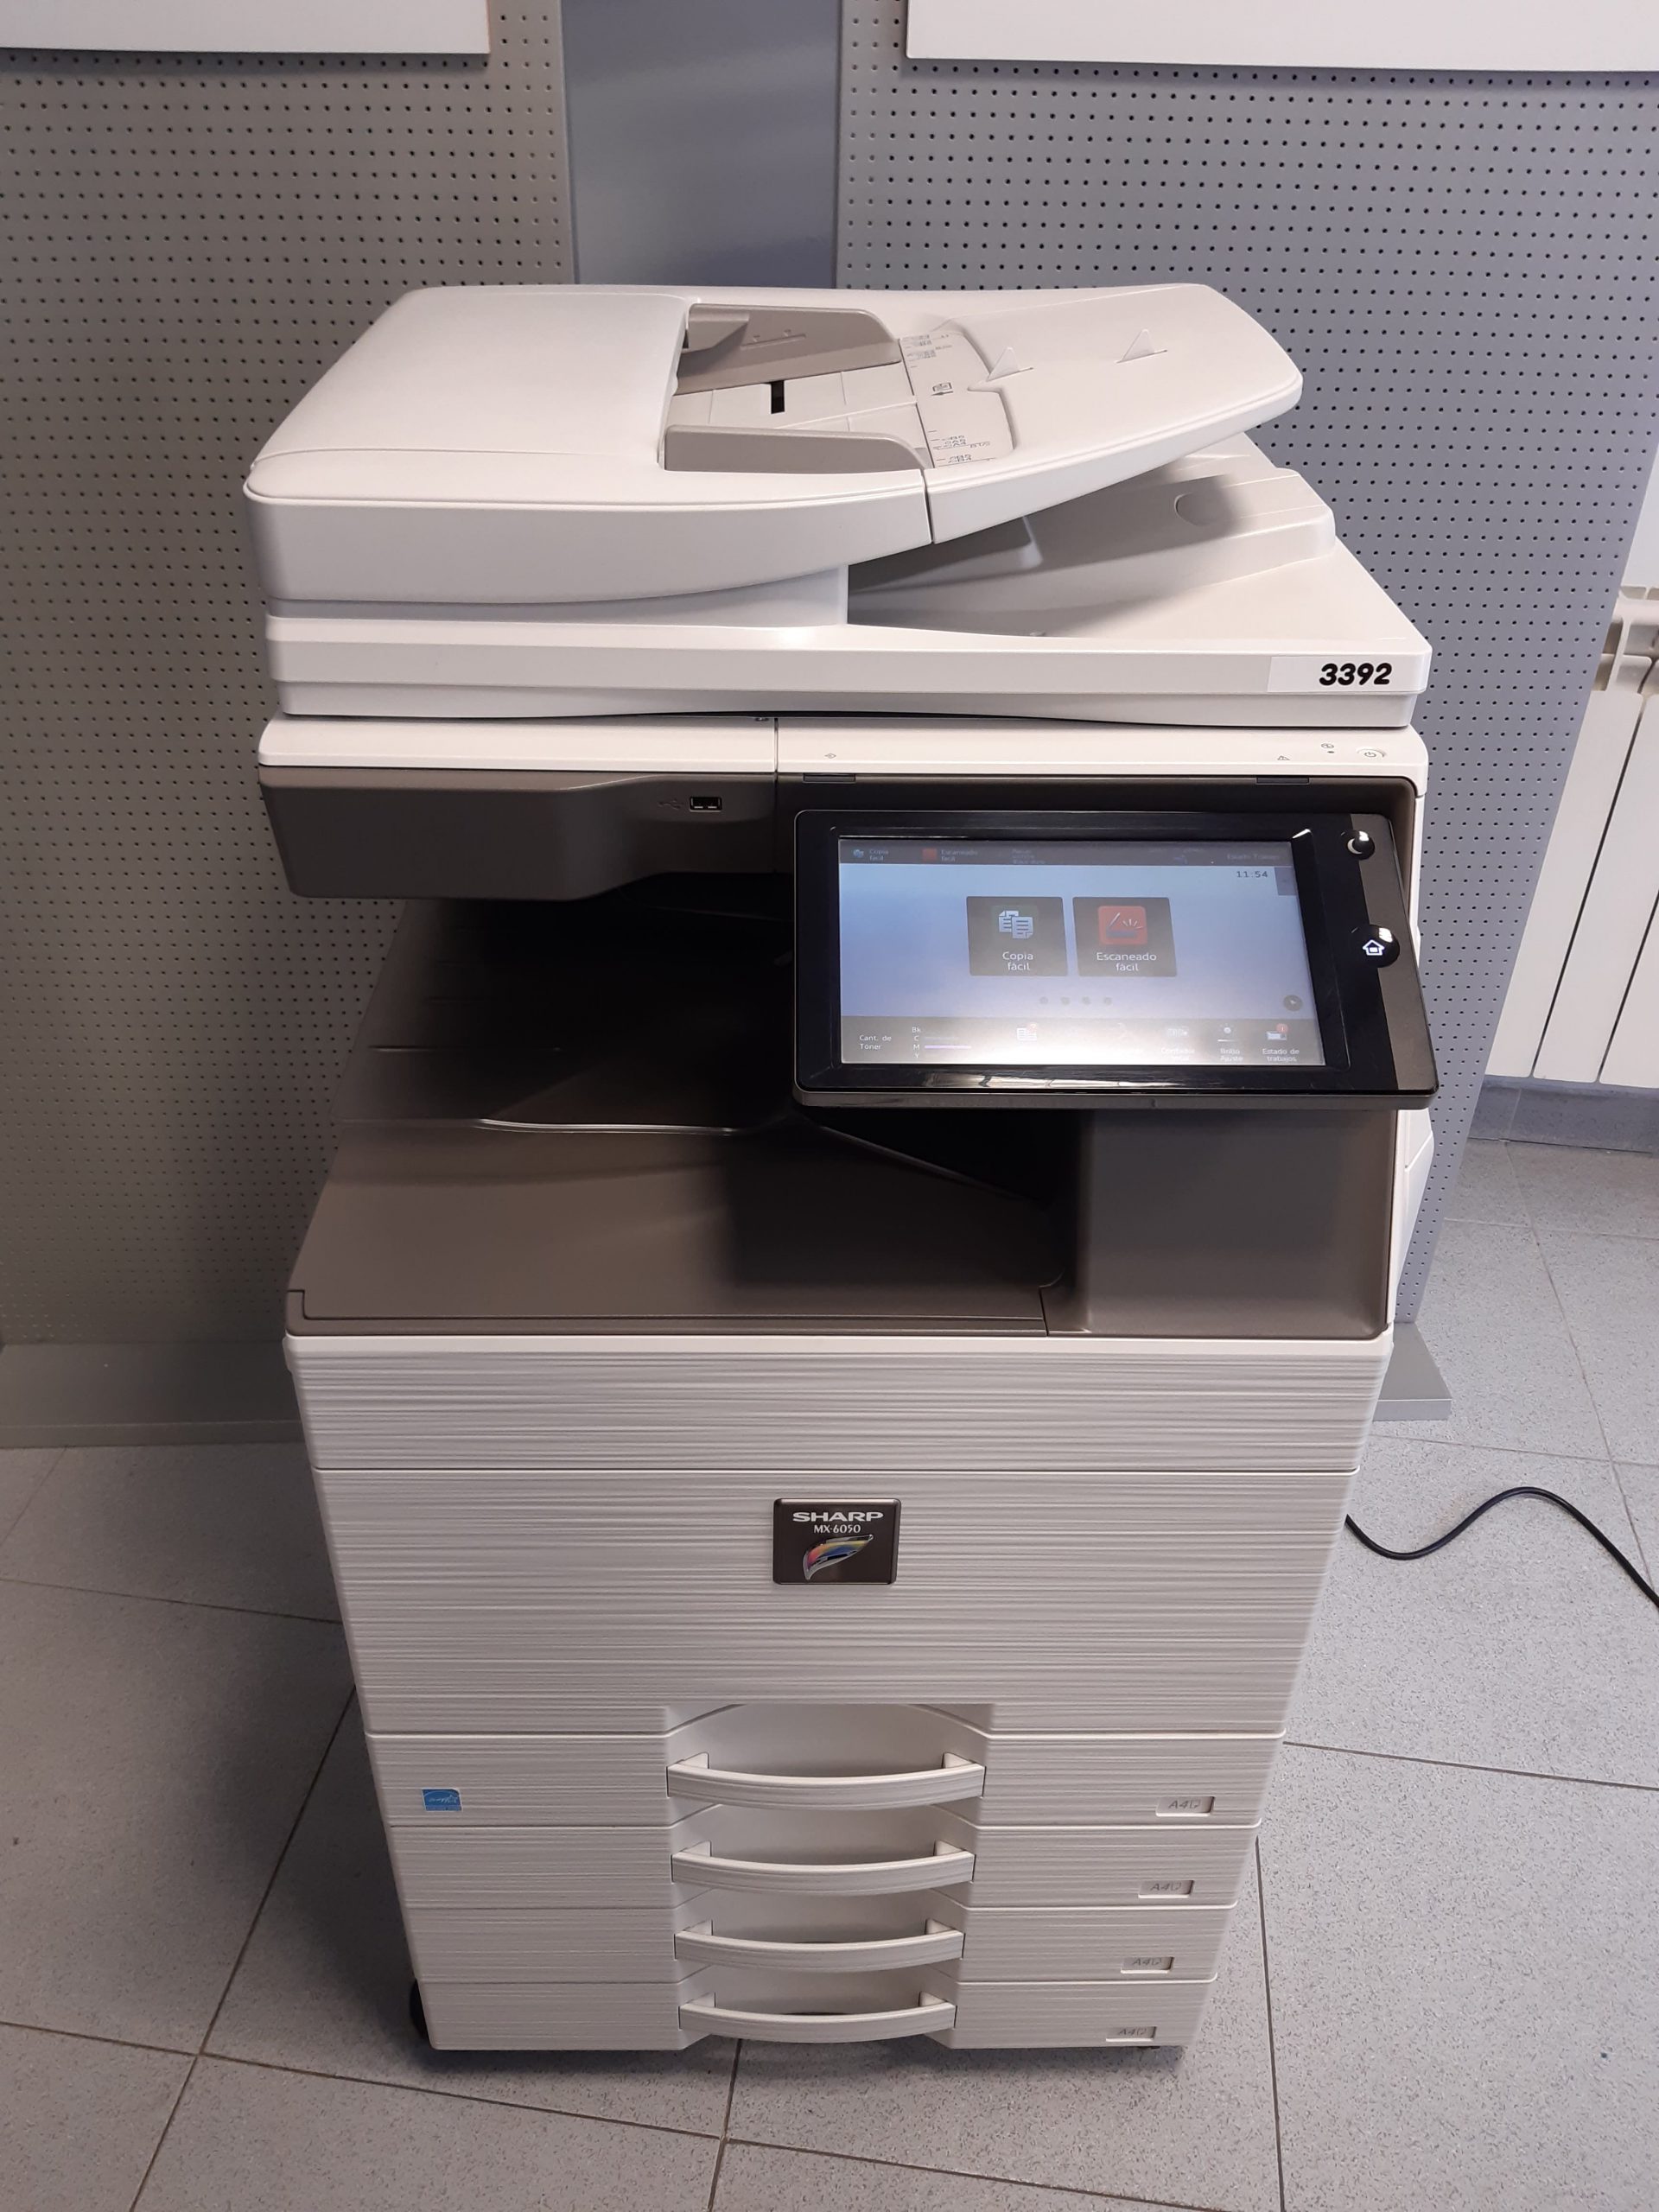  Sharp MX-4050N - Impresora multifunción láser a color A3 A4  renovada - 40 ppm, copia, impresión, escaneo, duplexación automática, red,  2 bandejas, soporte : Productos de Oficina